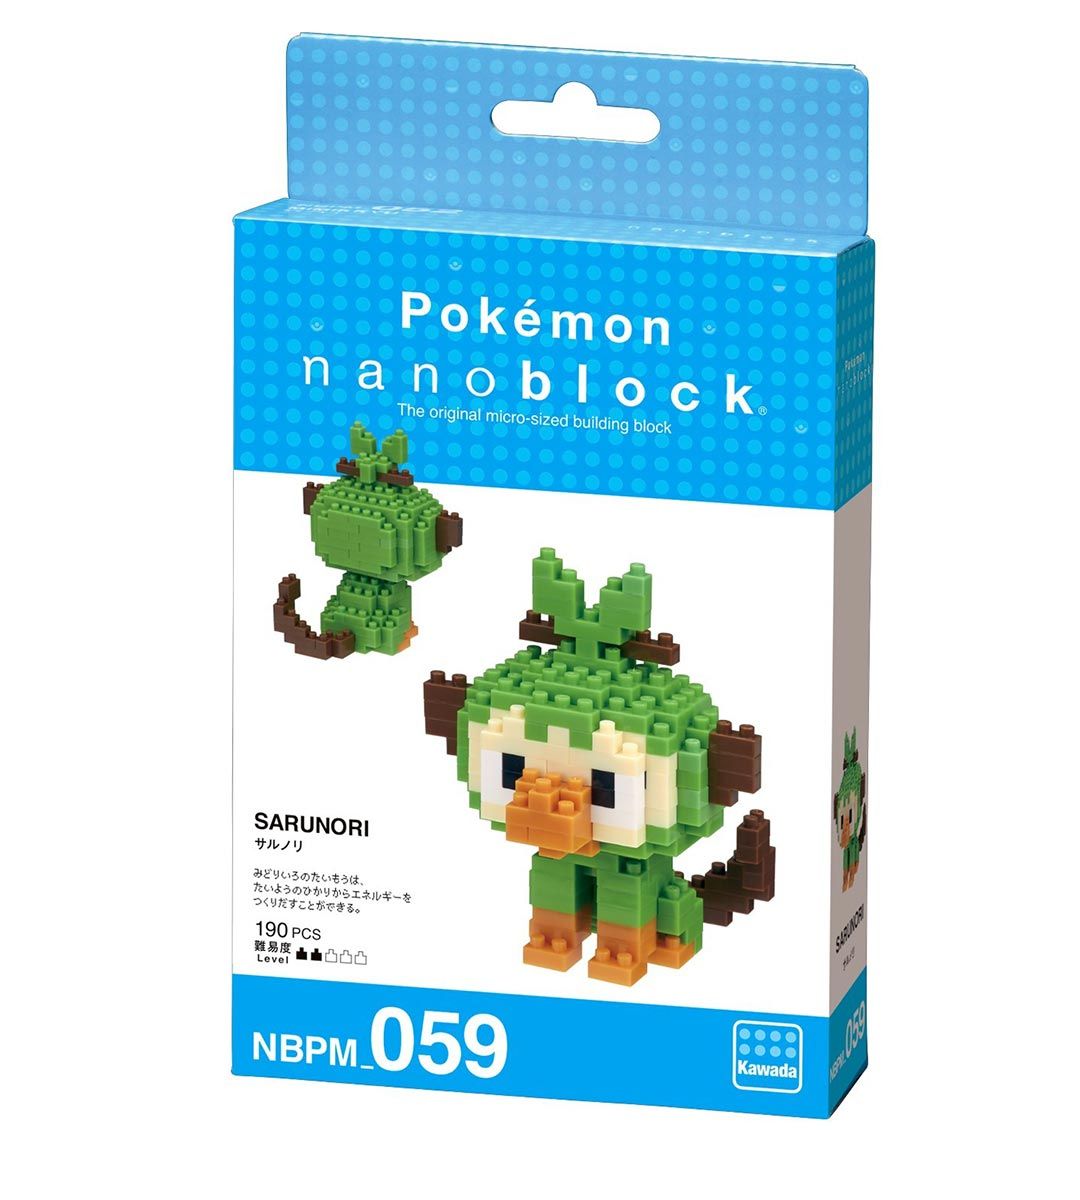 Pokémon x Nanoblock - Ouistempo - NBPM 059